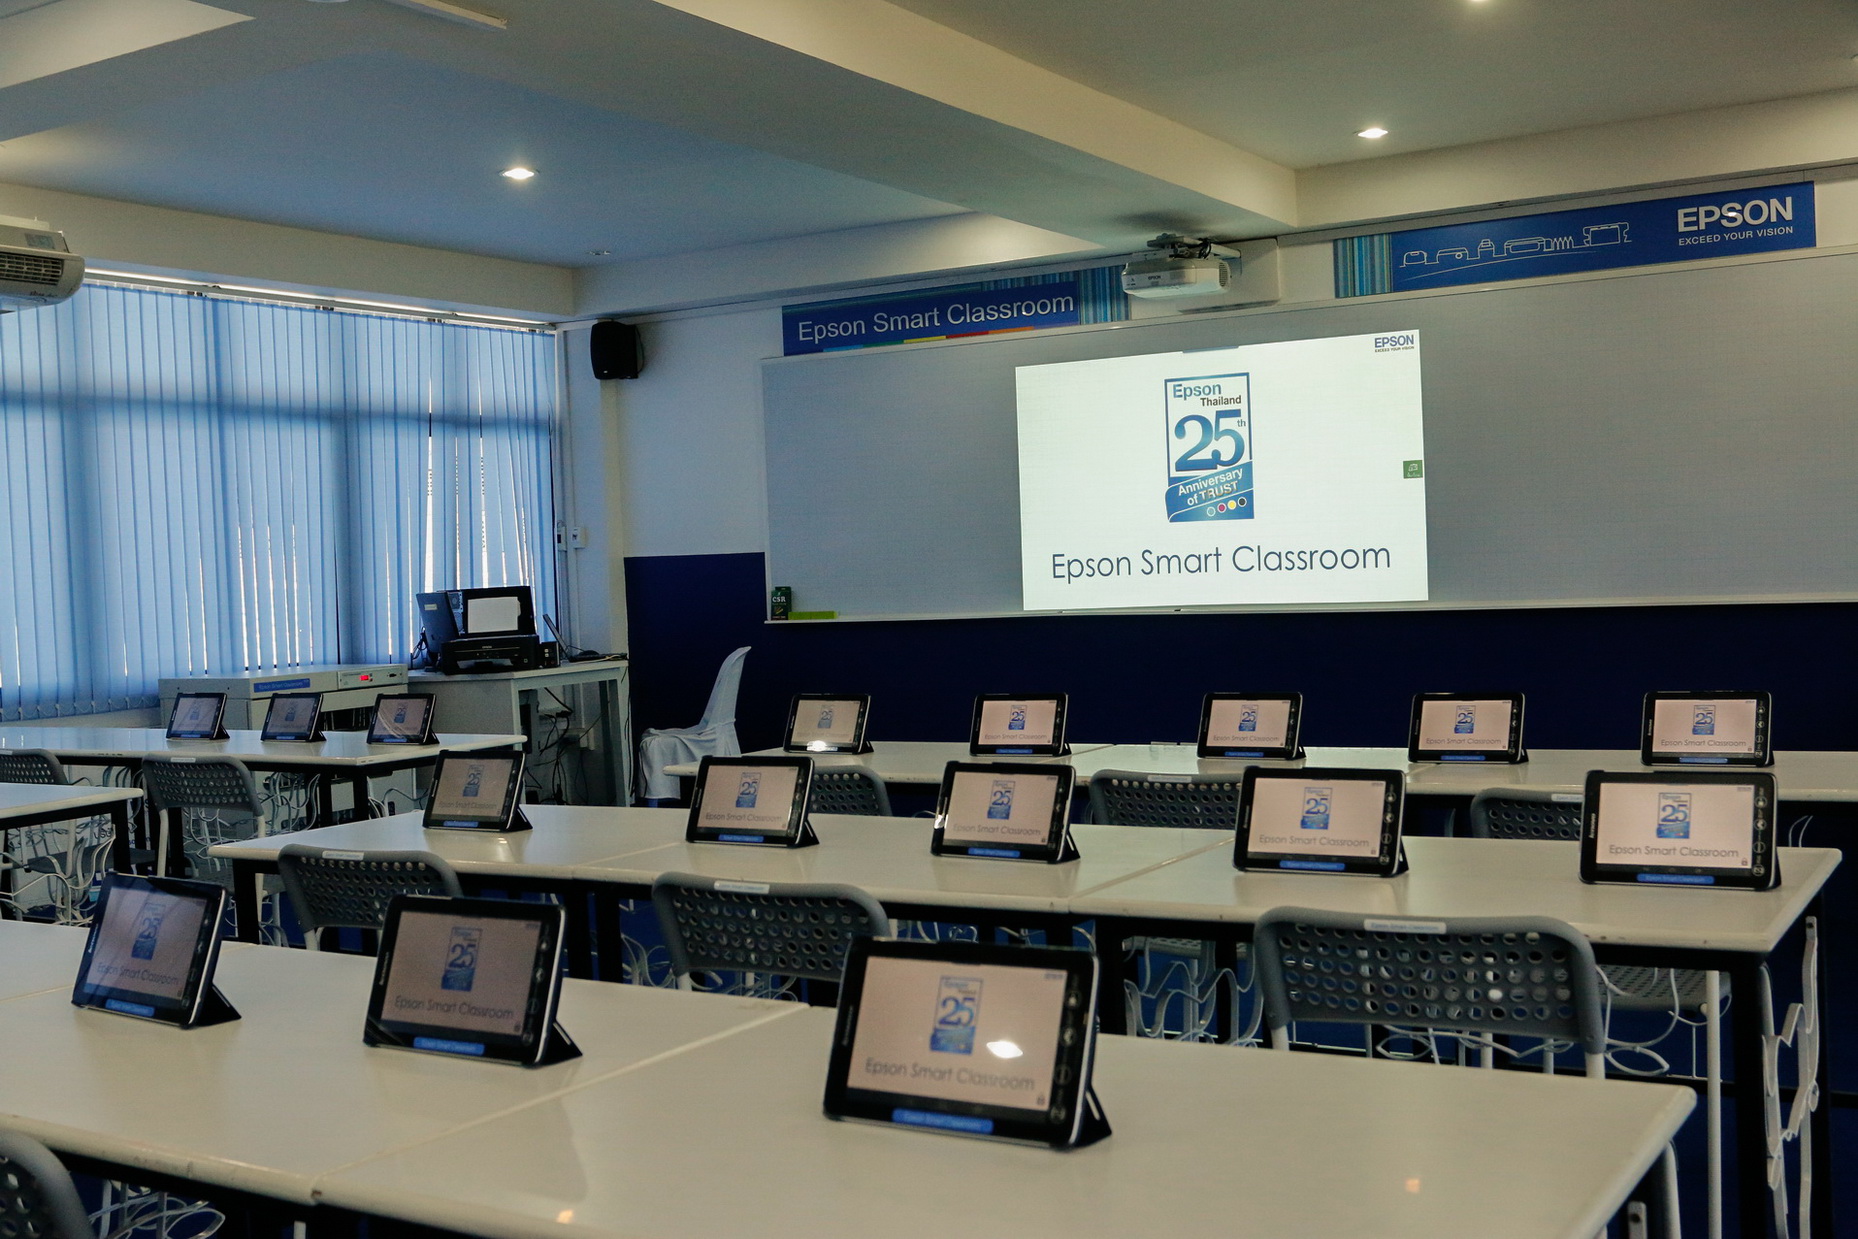 เอปสันทุ่มงบจัดหนัก ติดตั้ง Epson Smart Classroom ให้ 25 โรงเรียนทั่วภูมิภาค